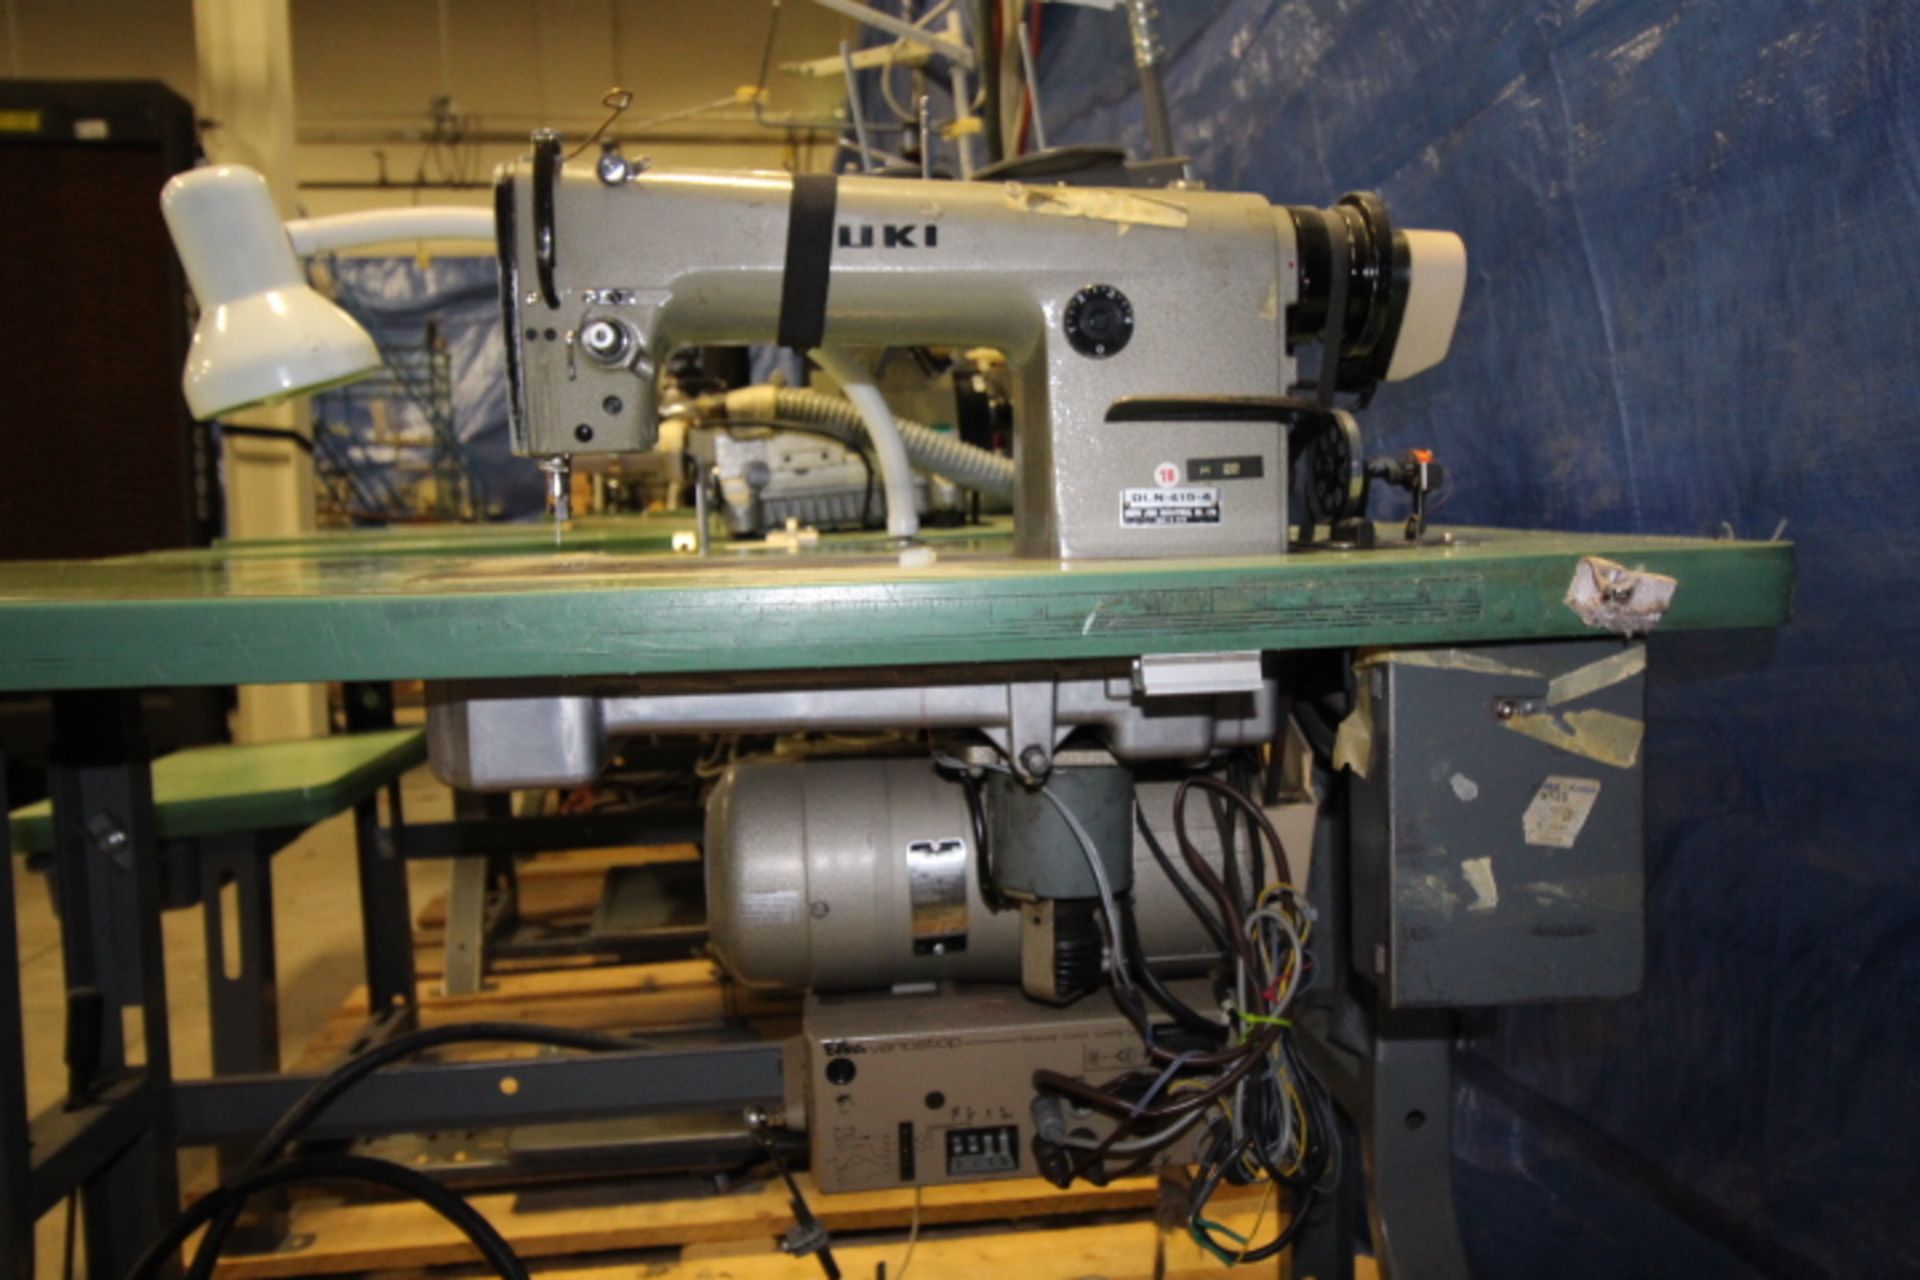 Juki Straight Stitch Sewing Machine 3phase Pneumatic, M#DLN415-4 - Image 3 of 3